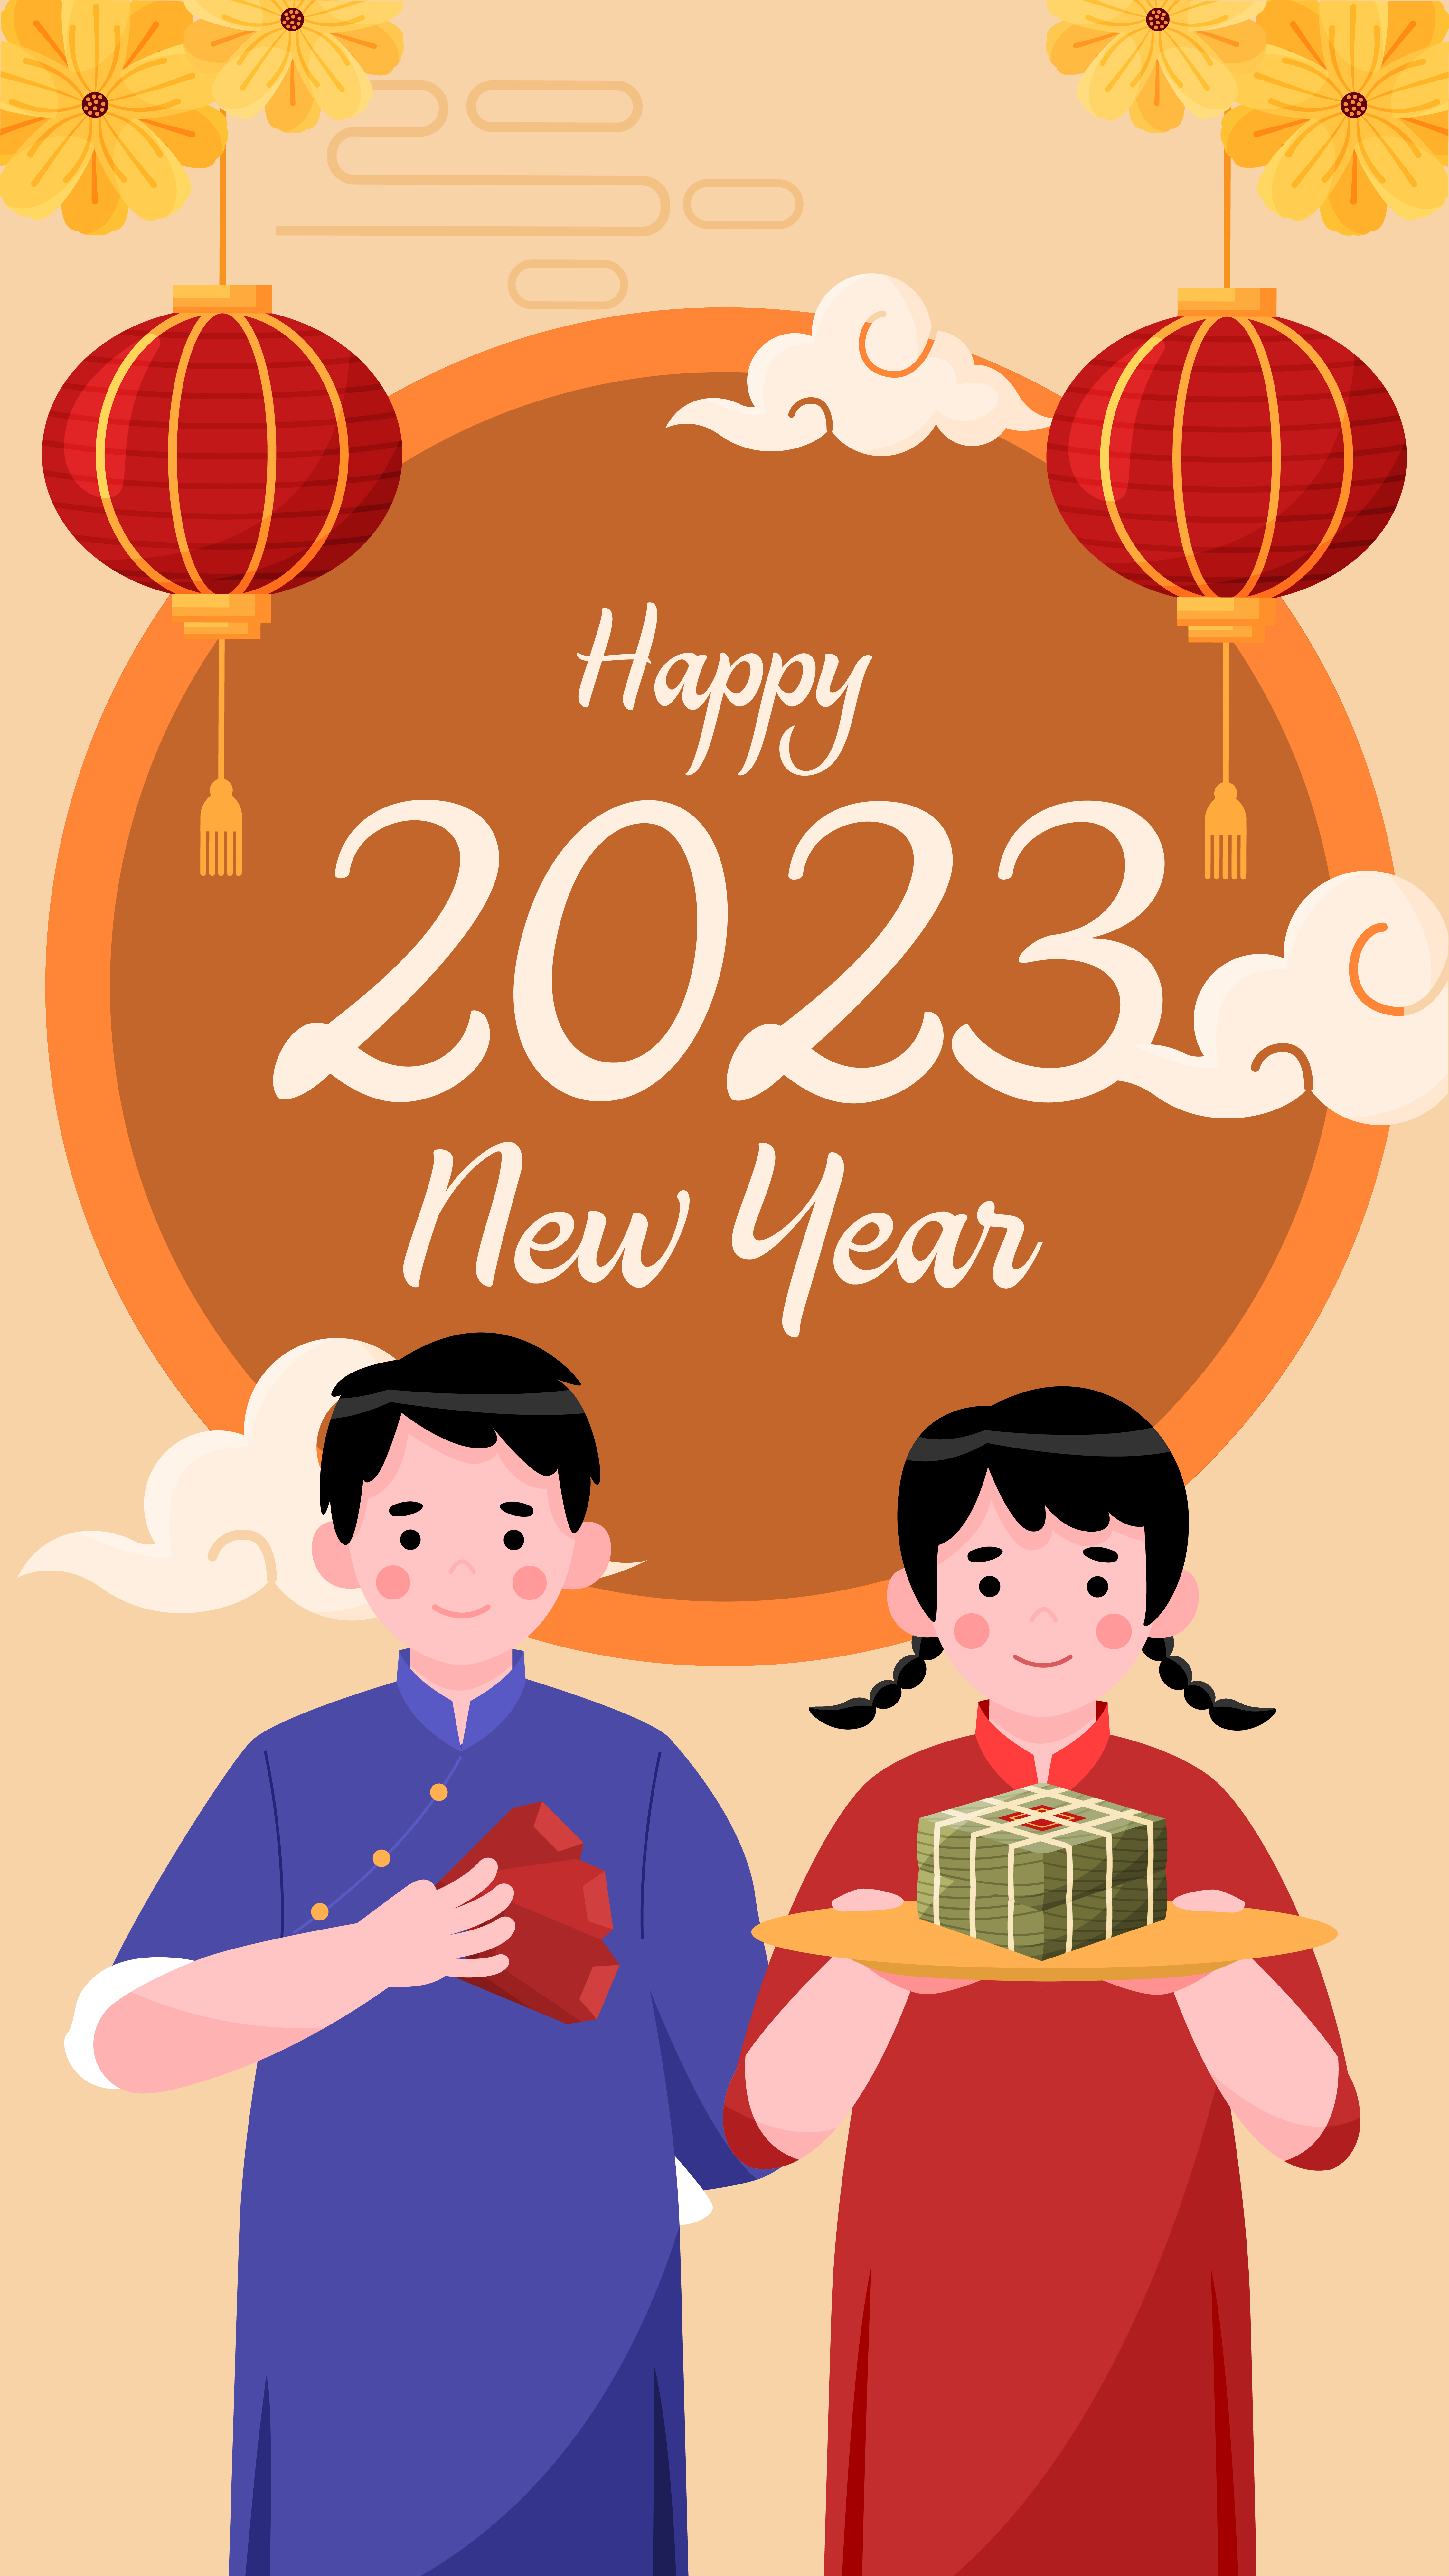 Hình Ảnh Chúc Mừng Năm Mới 2024: Một năm mới lại đến, chúc mừng năm mới 2024! Chúc cho những điều tốt đẹp nhất đến với bạn và gia đình, đón năm mới với nhiều may mắn, thành công và hạnh phúc. Hãy cùng nhau chia sẻ niềm vui và yêu thương trong ngày Tết đến.